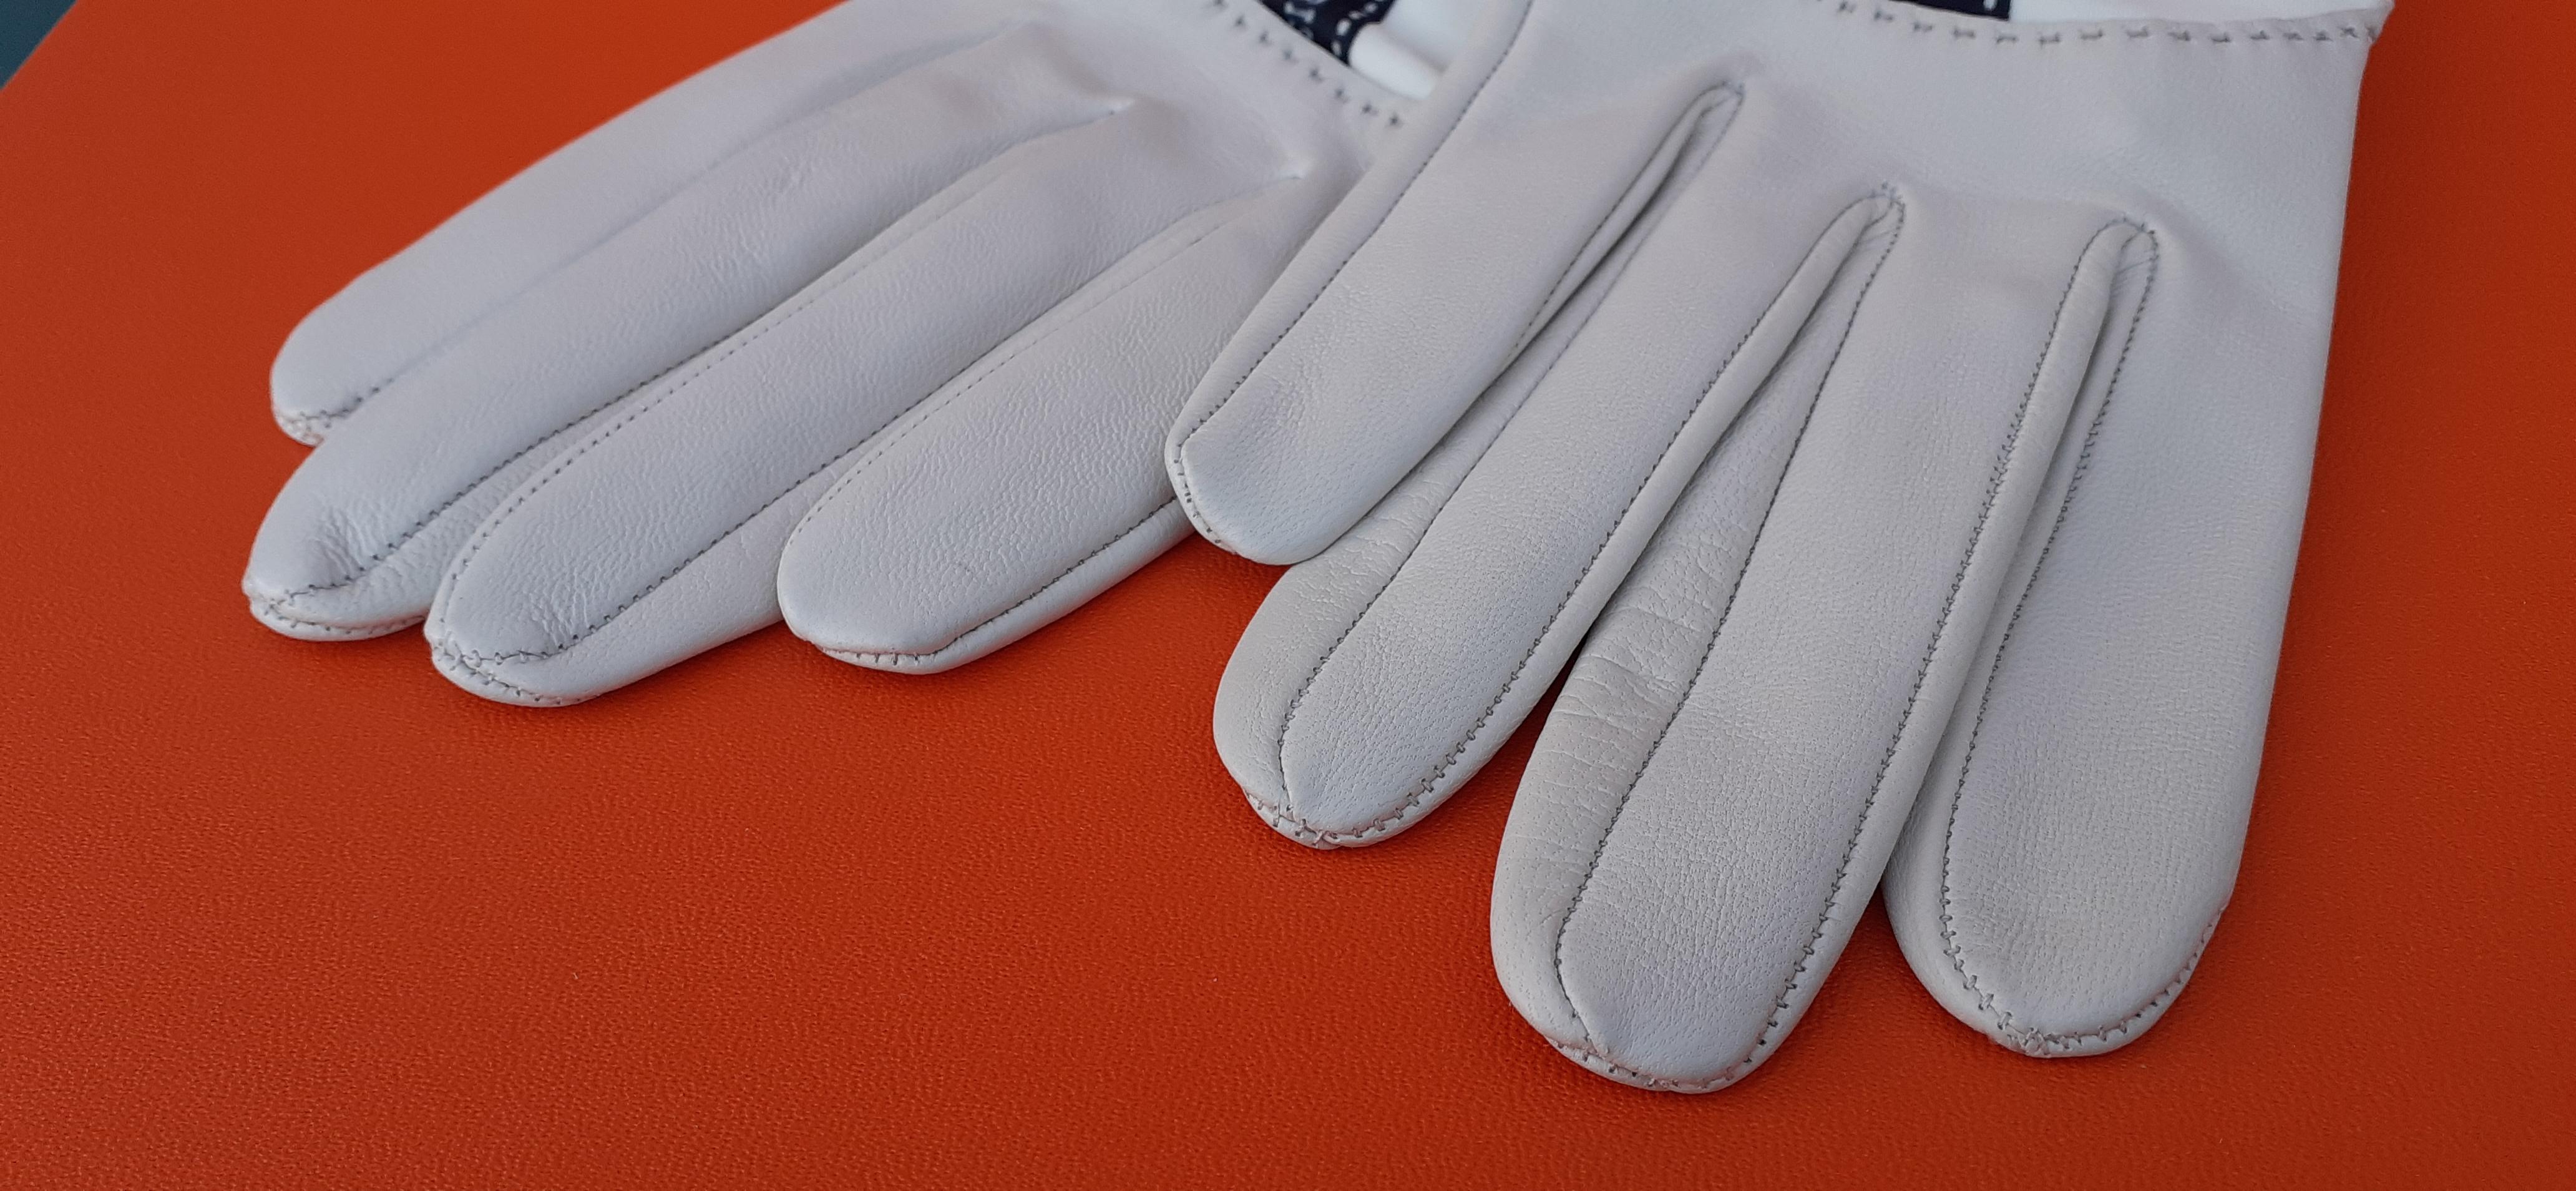 aris of paris leather gloves